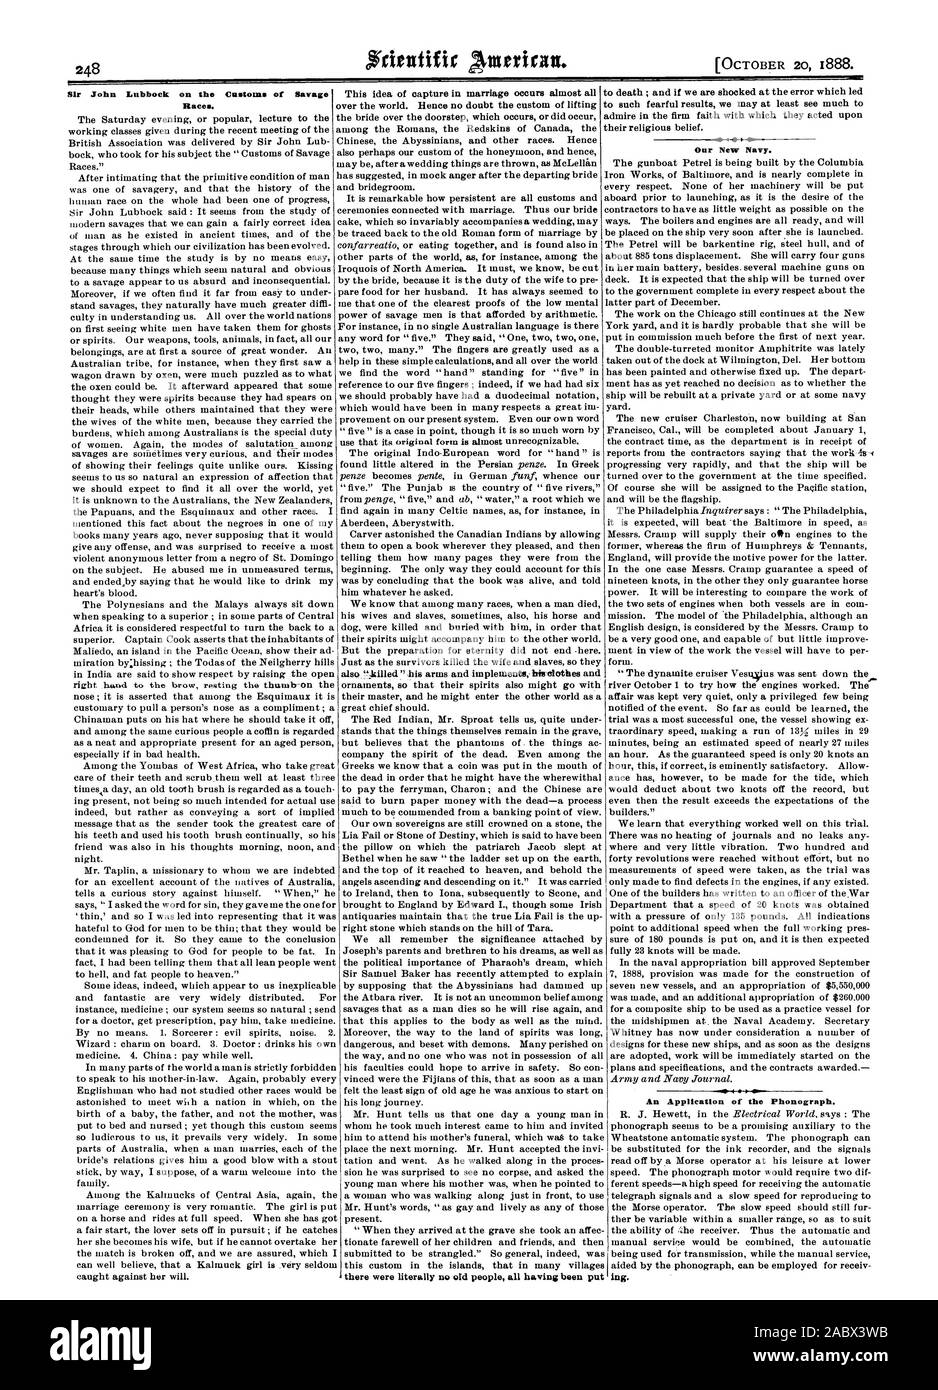 Sir John lubbock auf die Sitten der Wilden Rassen. Eine Anwendung des Phonographen. Unsere neue Marine., Scientific American, 1888-10-20 Stockfoto